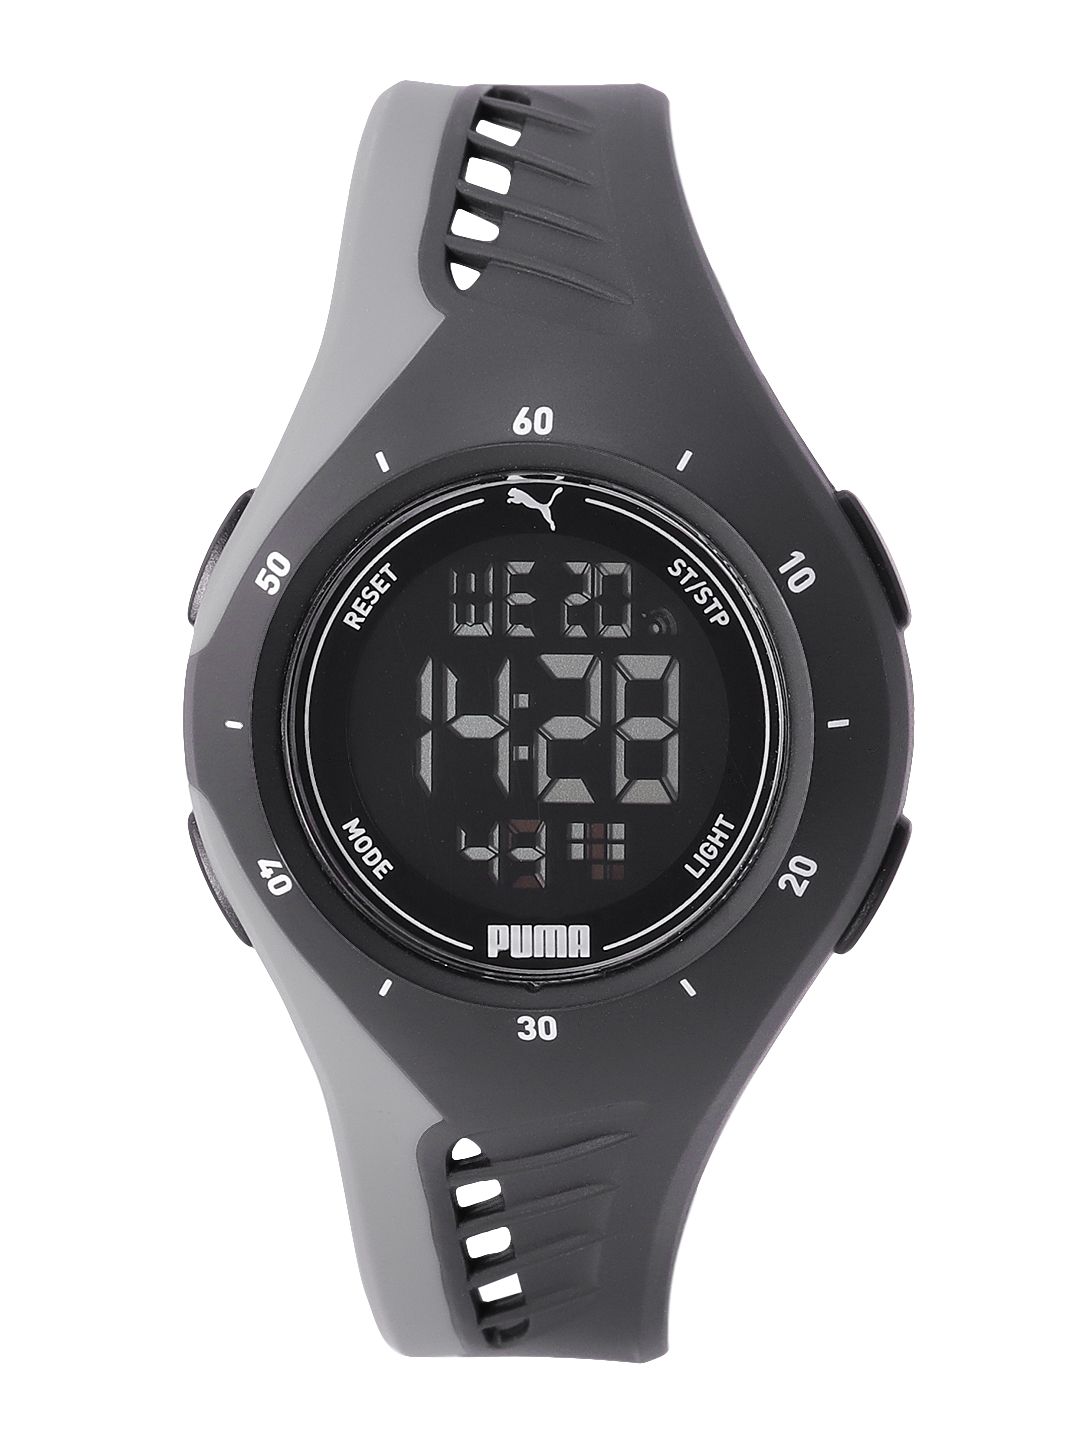 Puma Unisex Black Dial & Multicoloured Straps Digital Watch P6011 Price in India